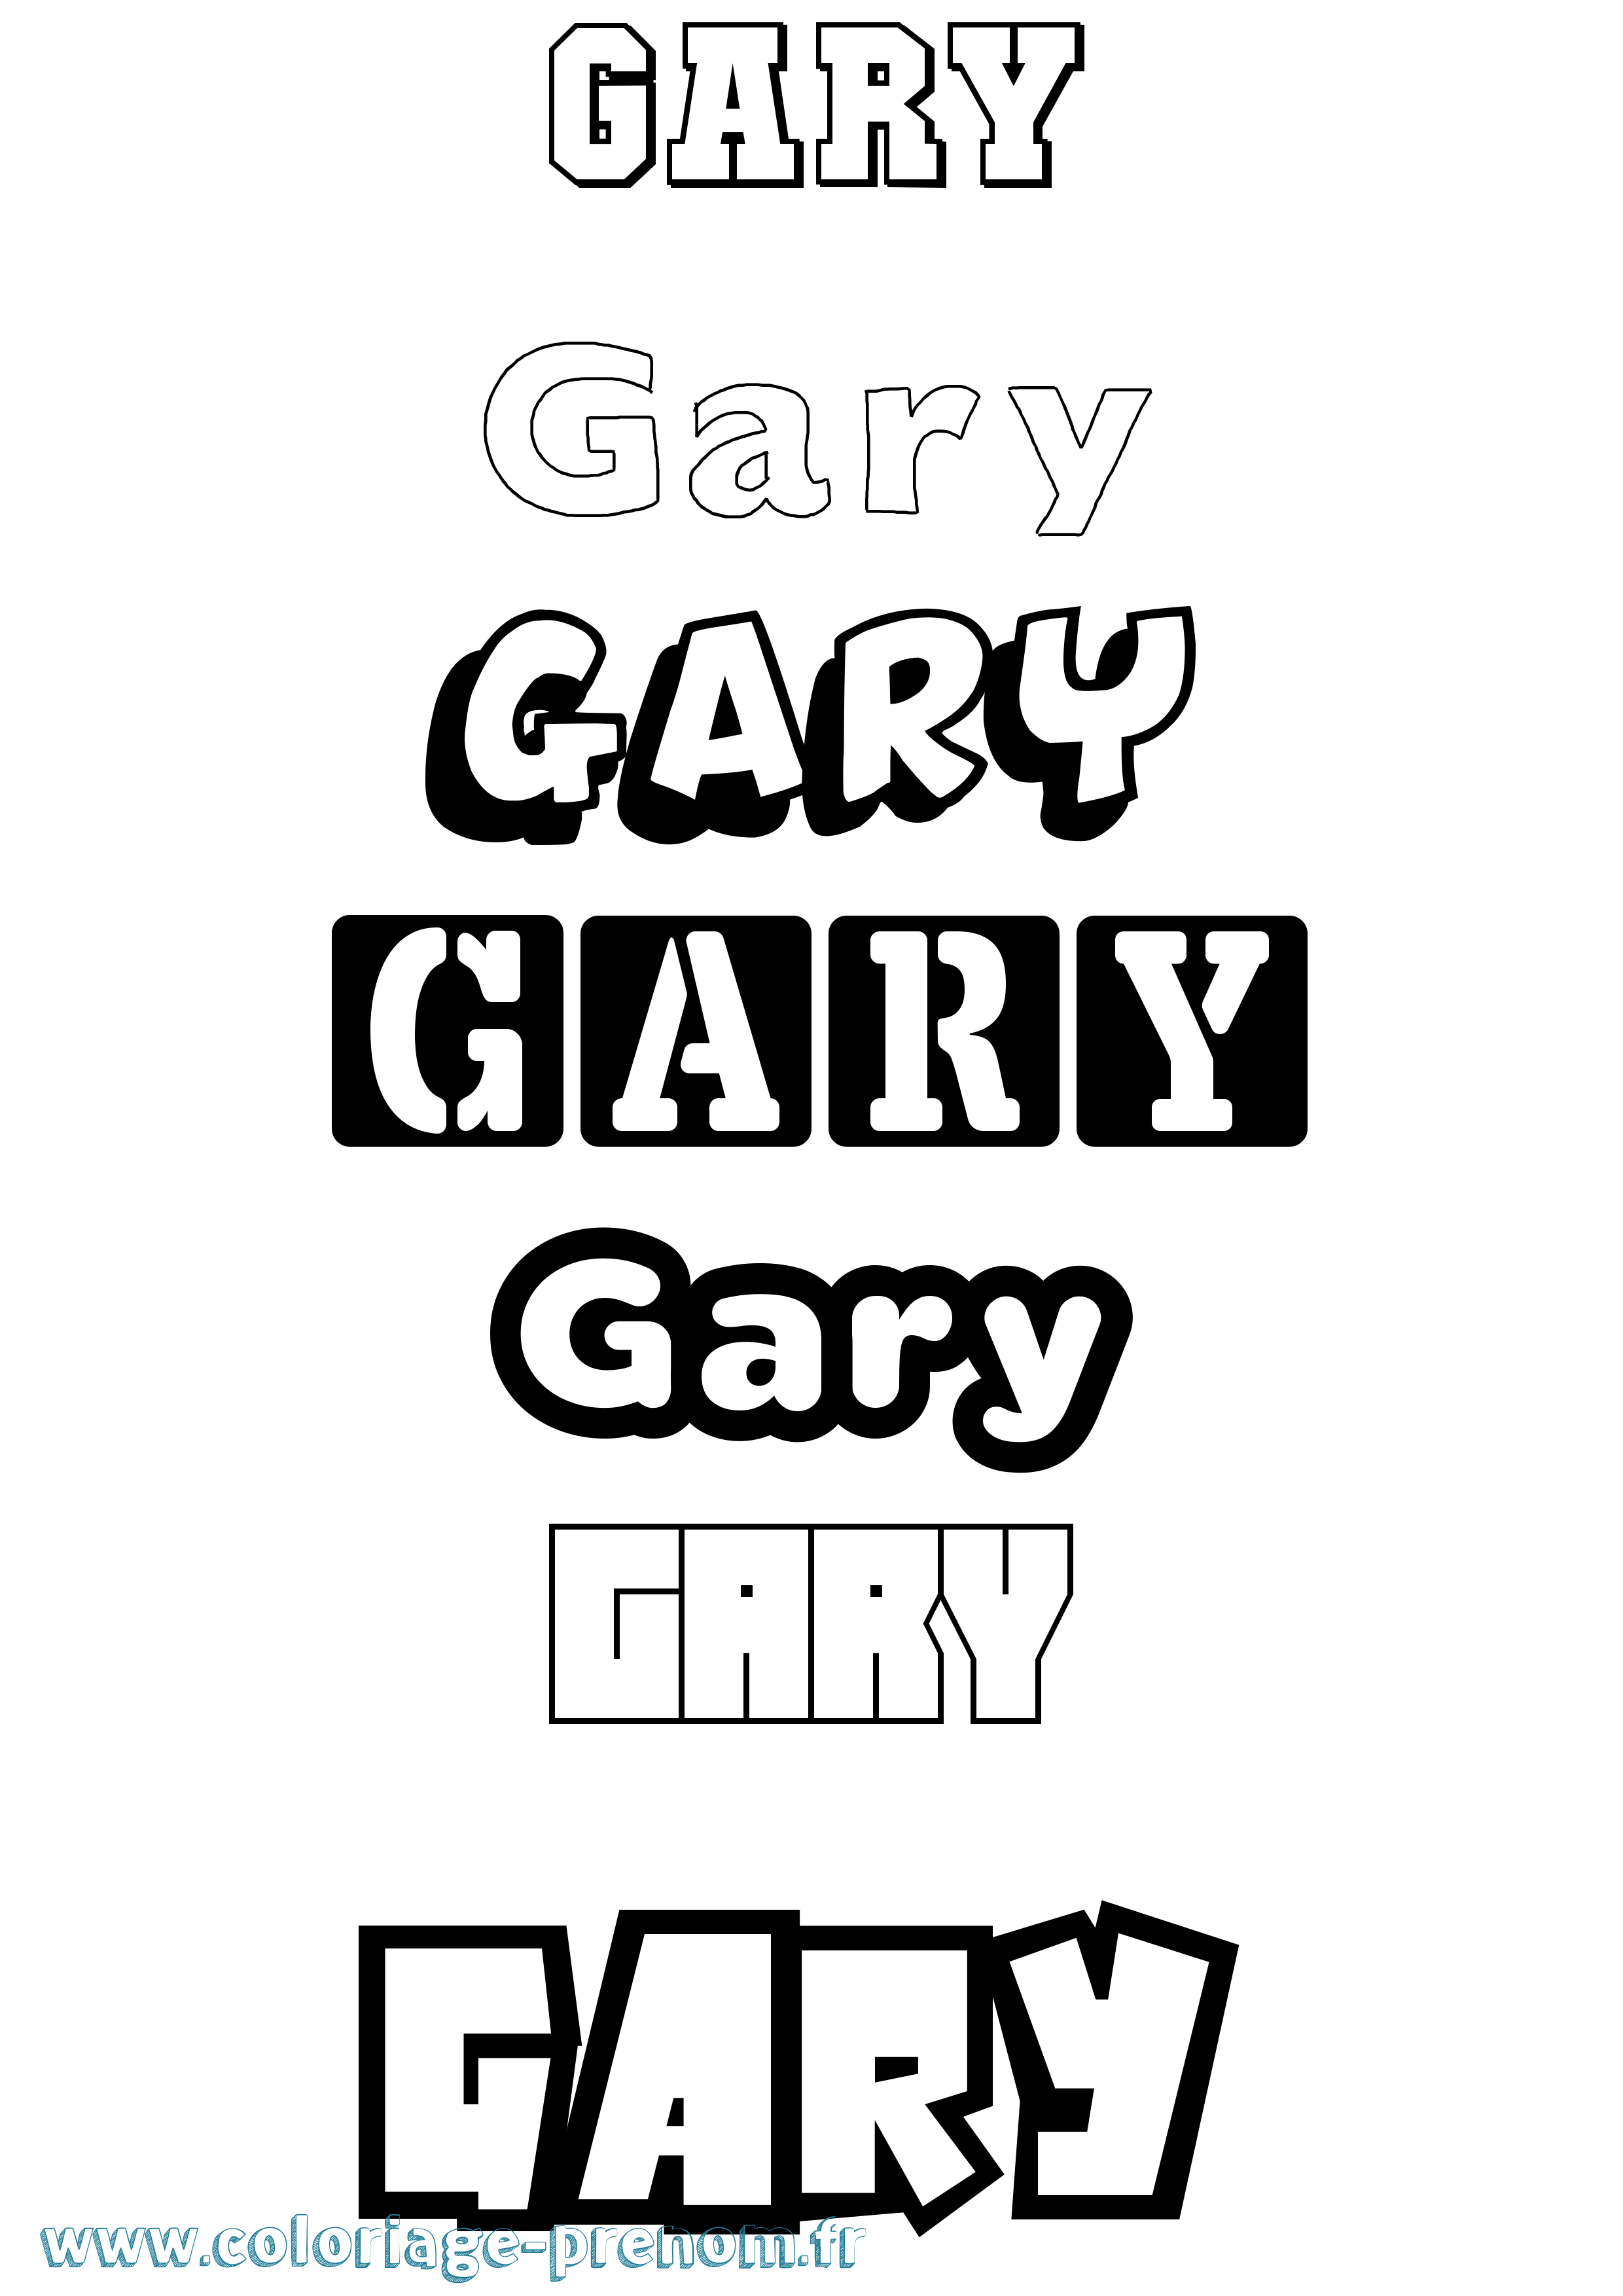 Coloriage prénom Gary